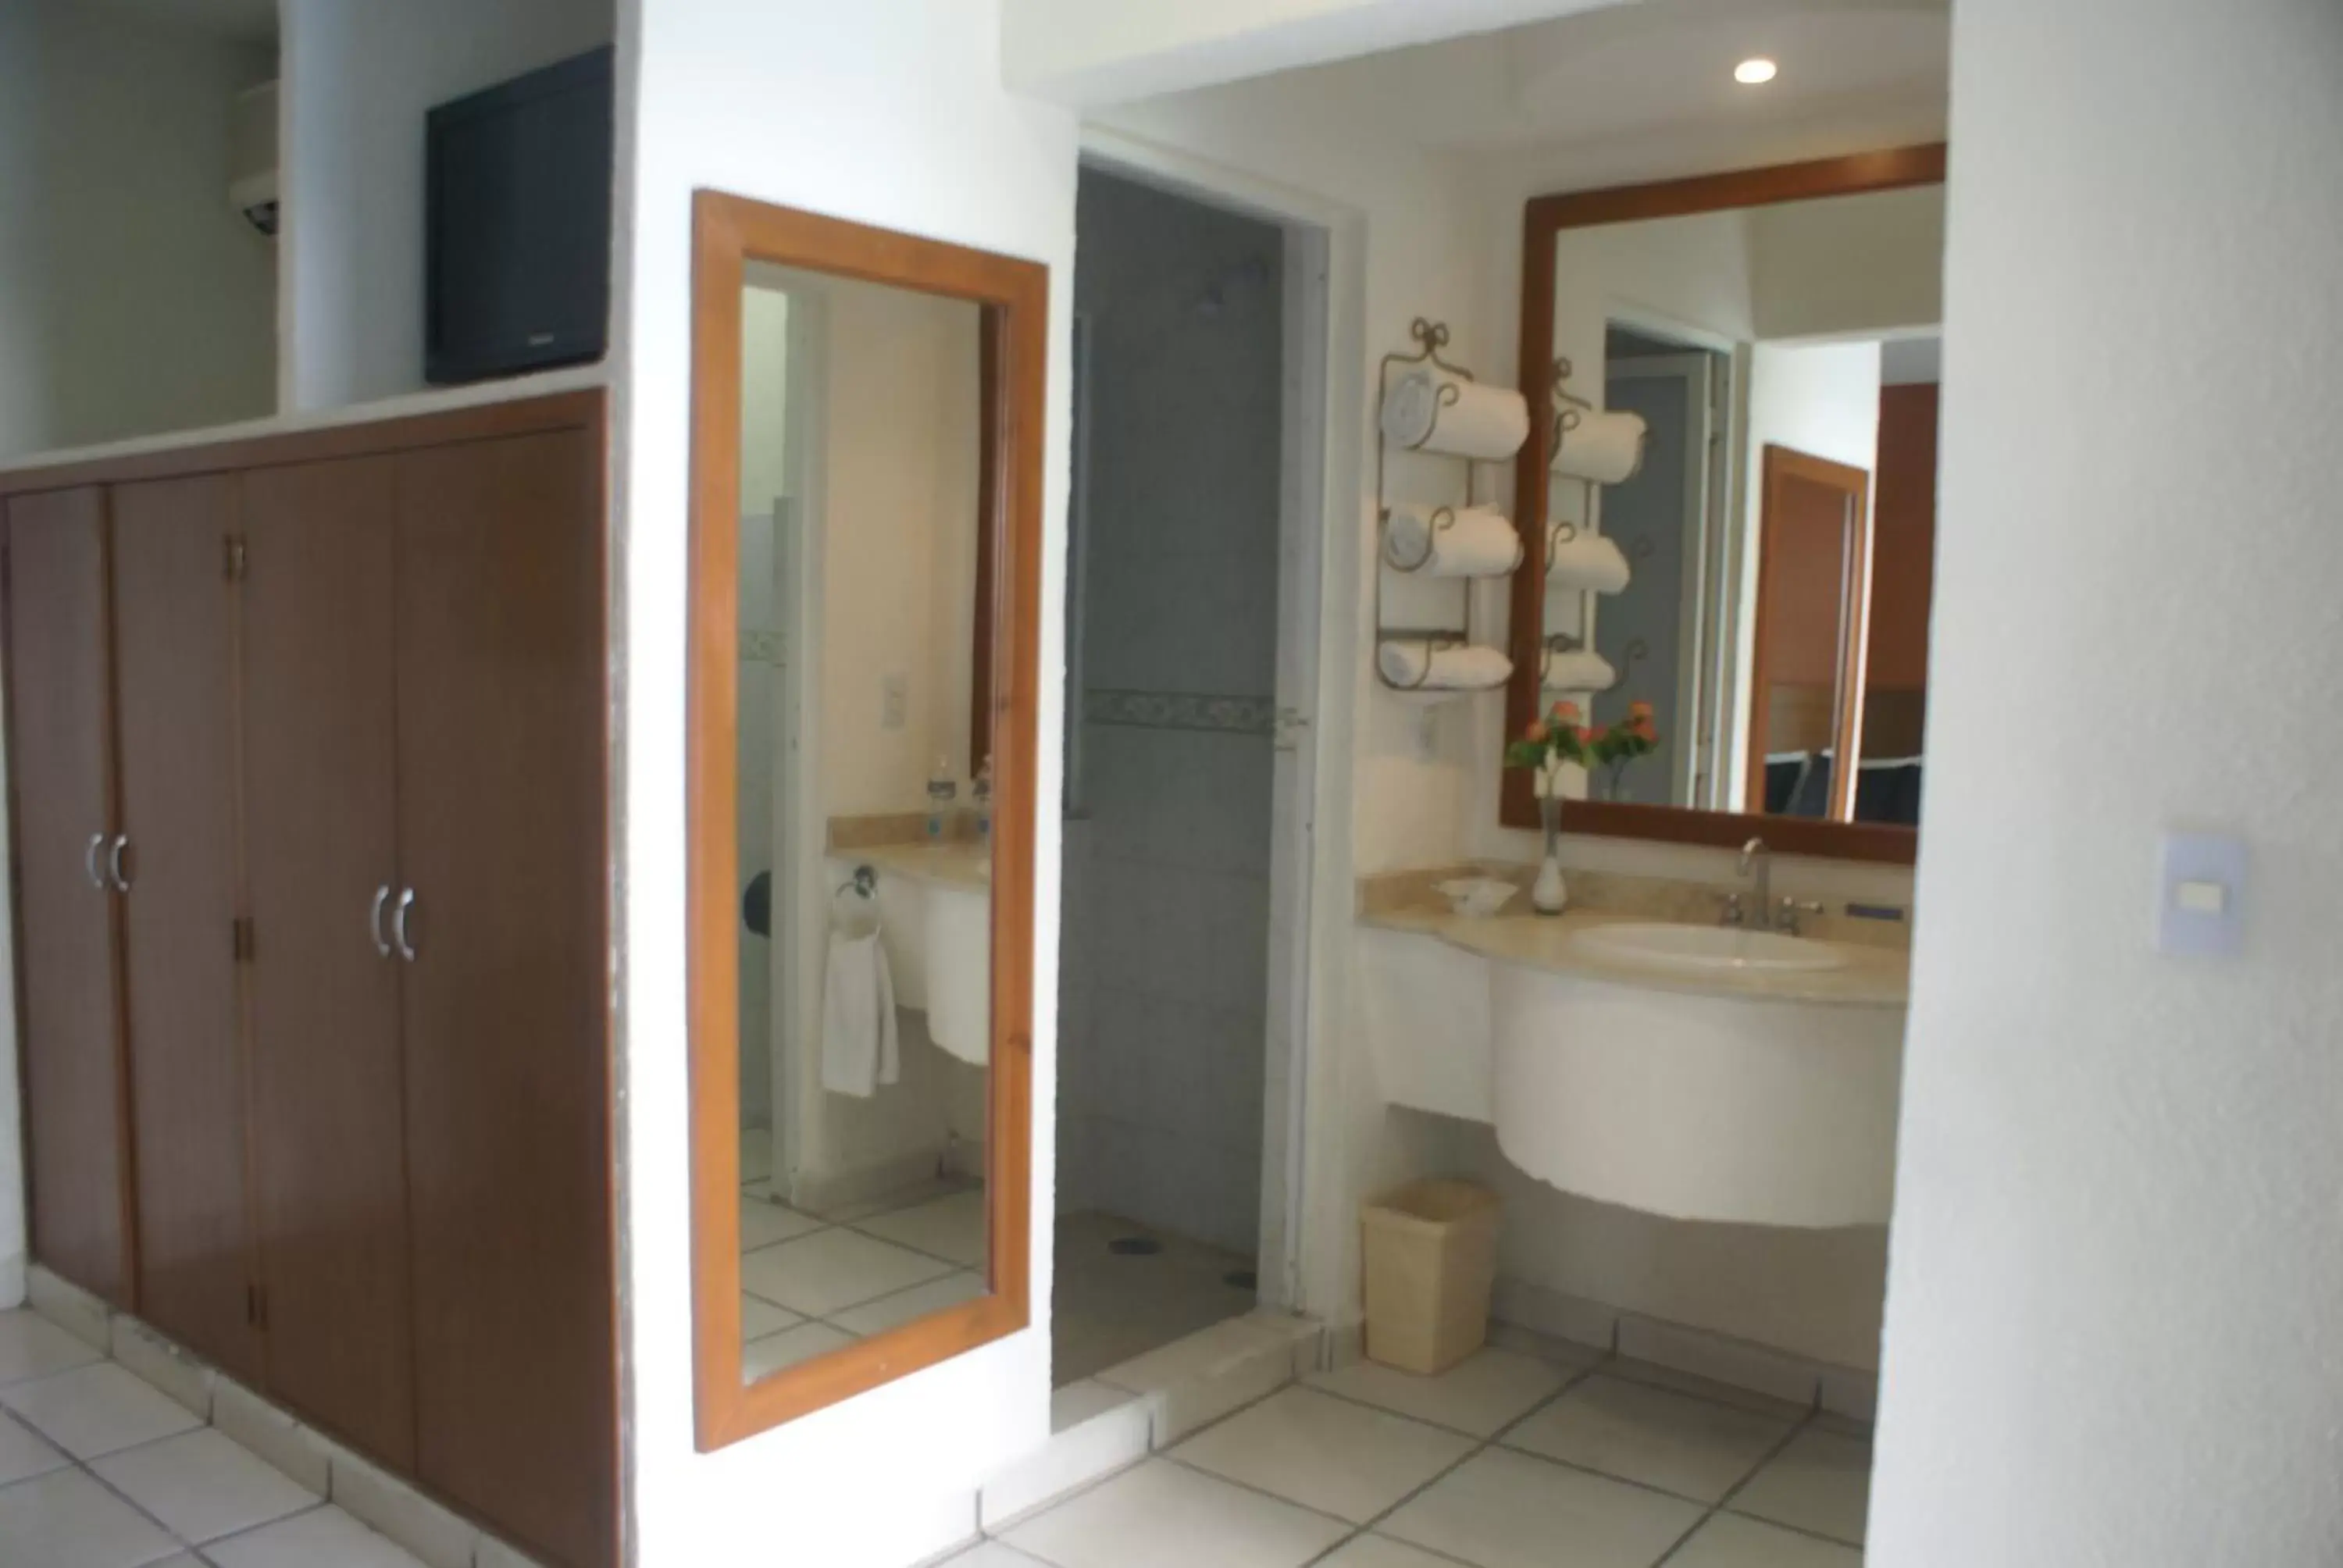 Bathroom in Hotel Arcos Aeropuerto